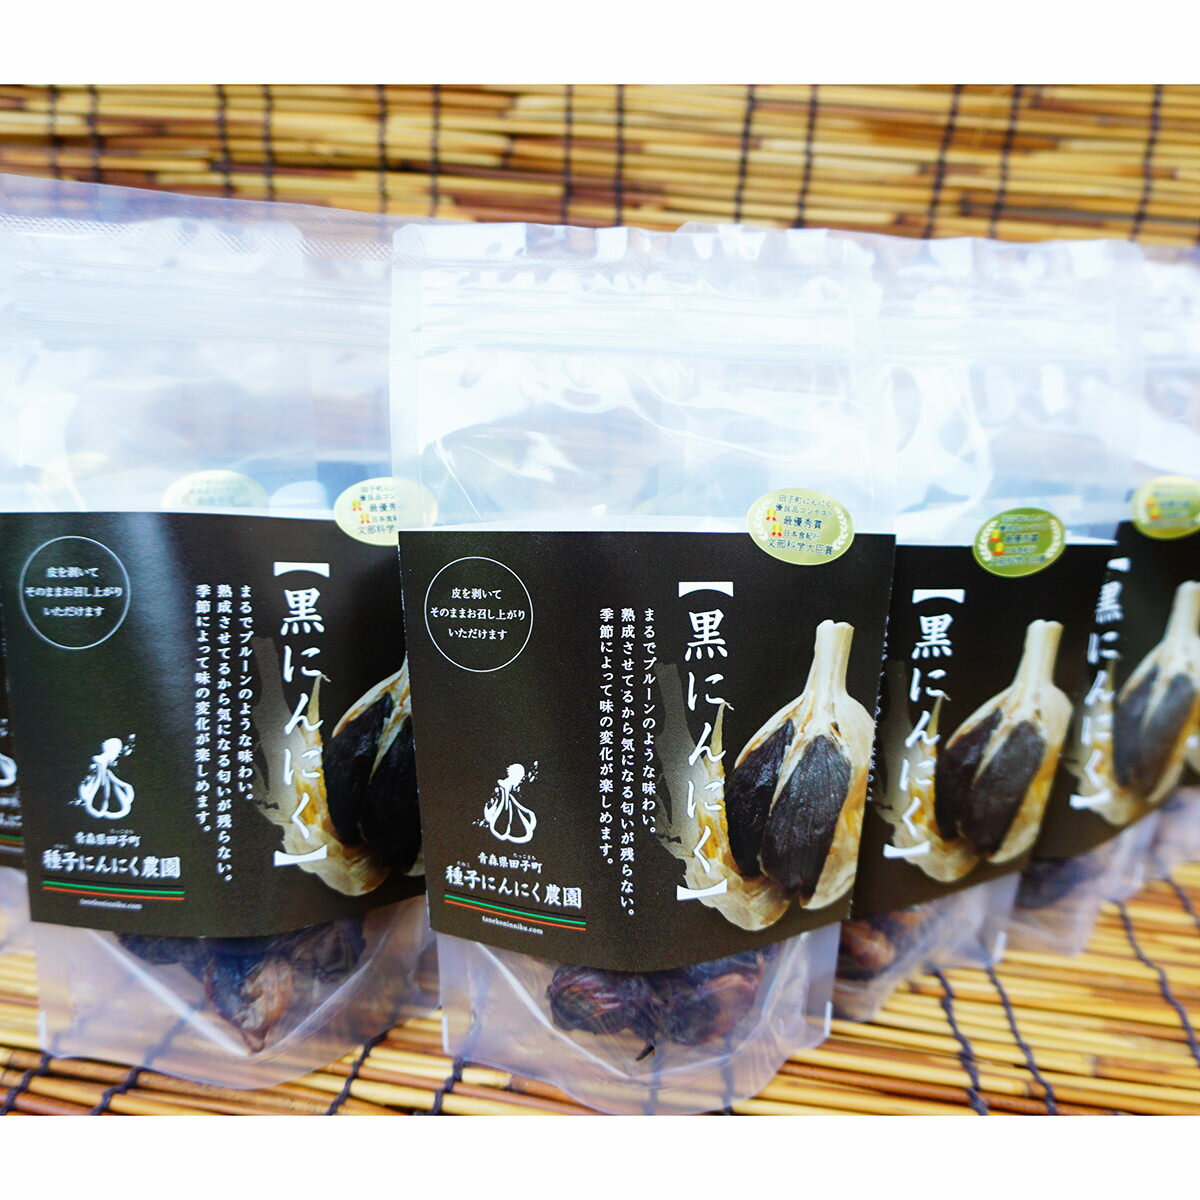 黒にんにく 10袋 野菜 健康食品 にんにく 青森県産 大蒜 熟成 ポリフェノール におわない やわらかい 国産 種子にんにく農園